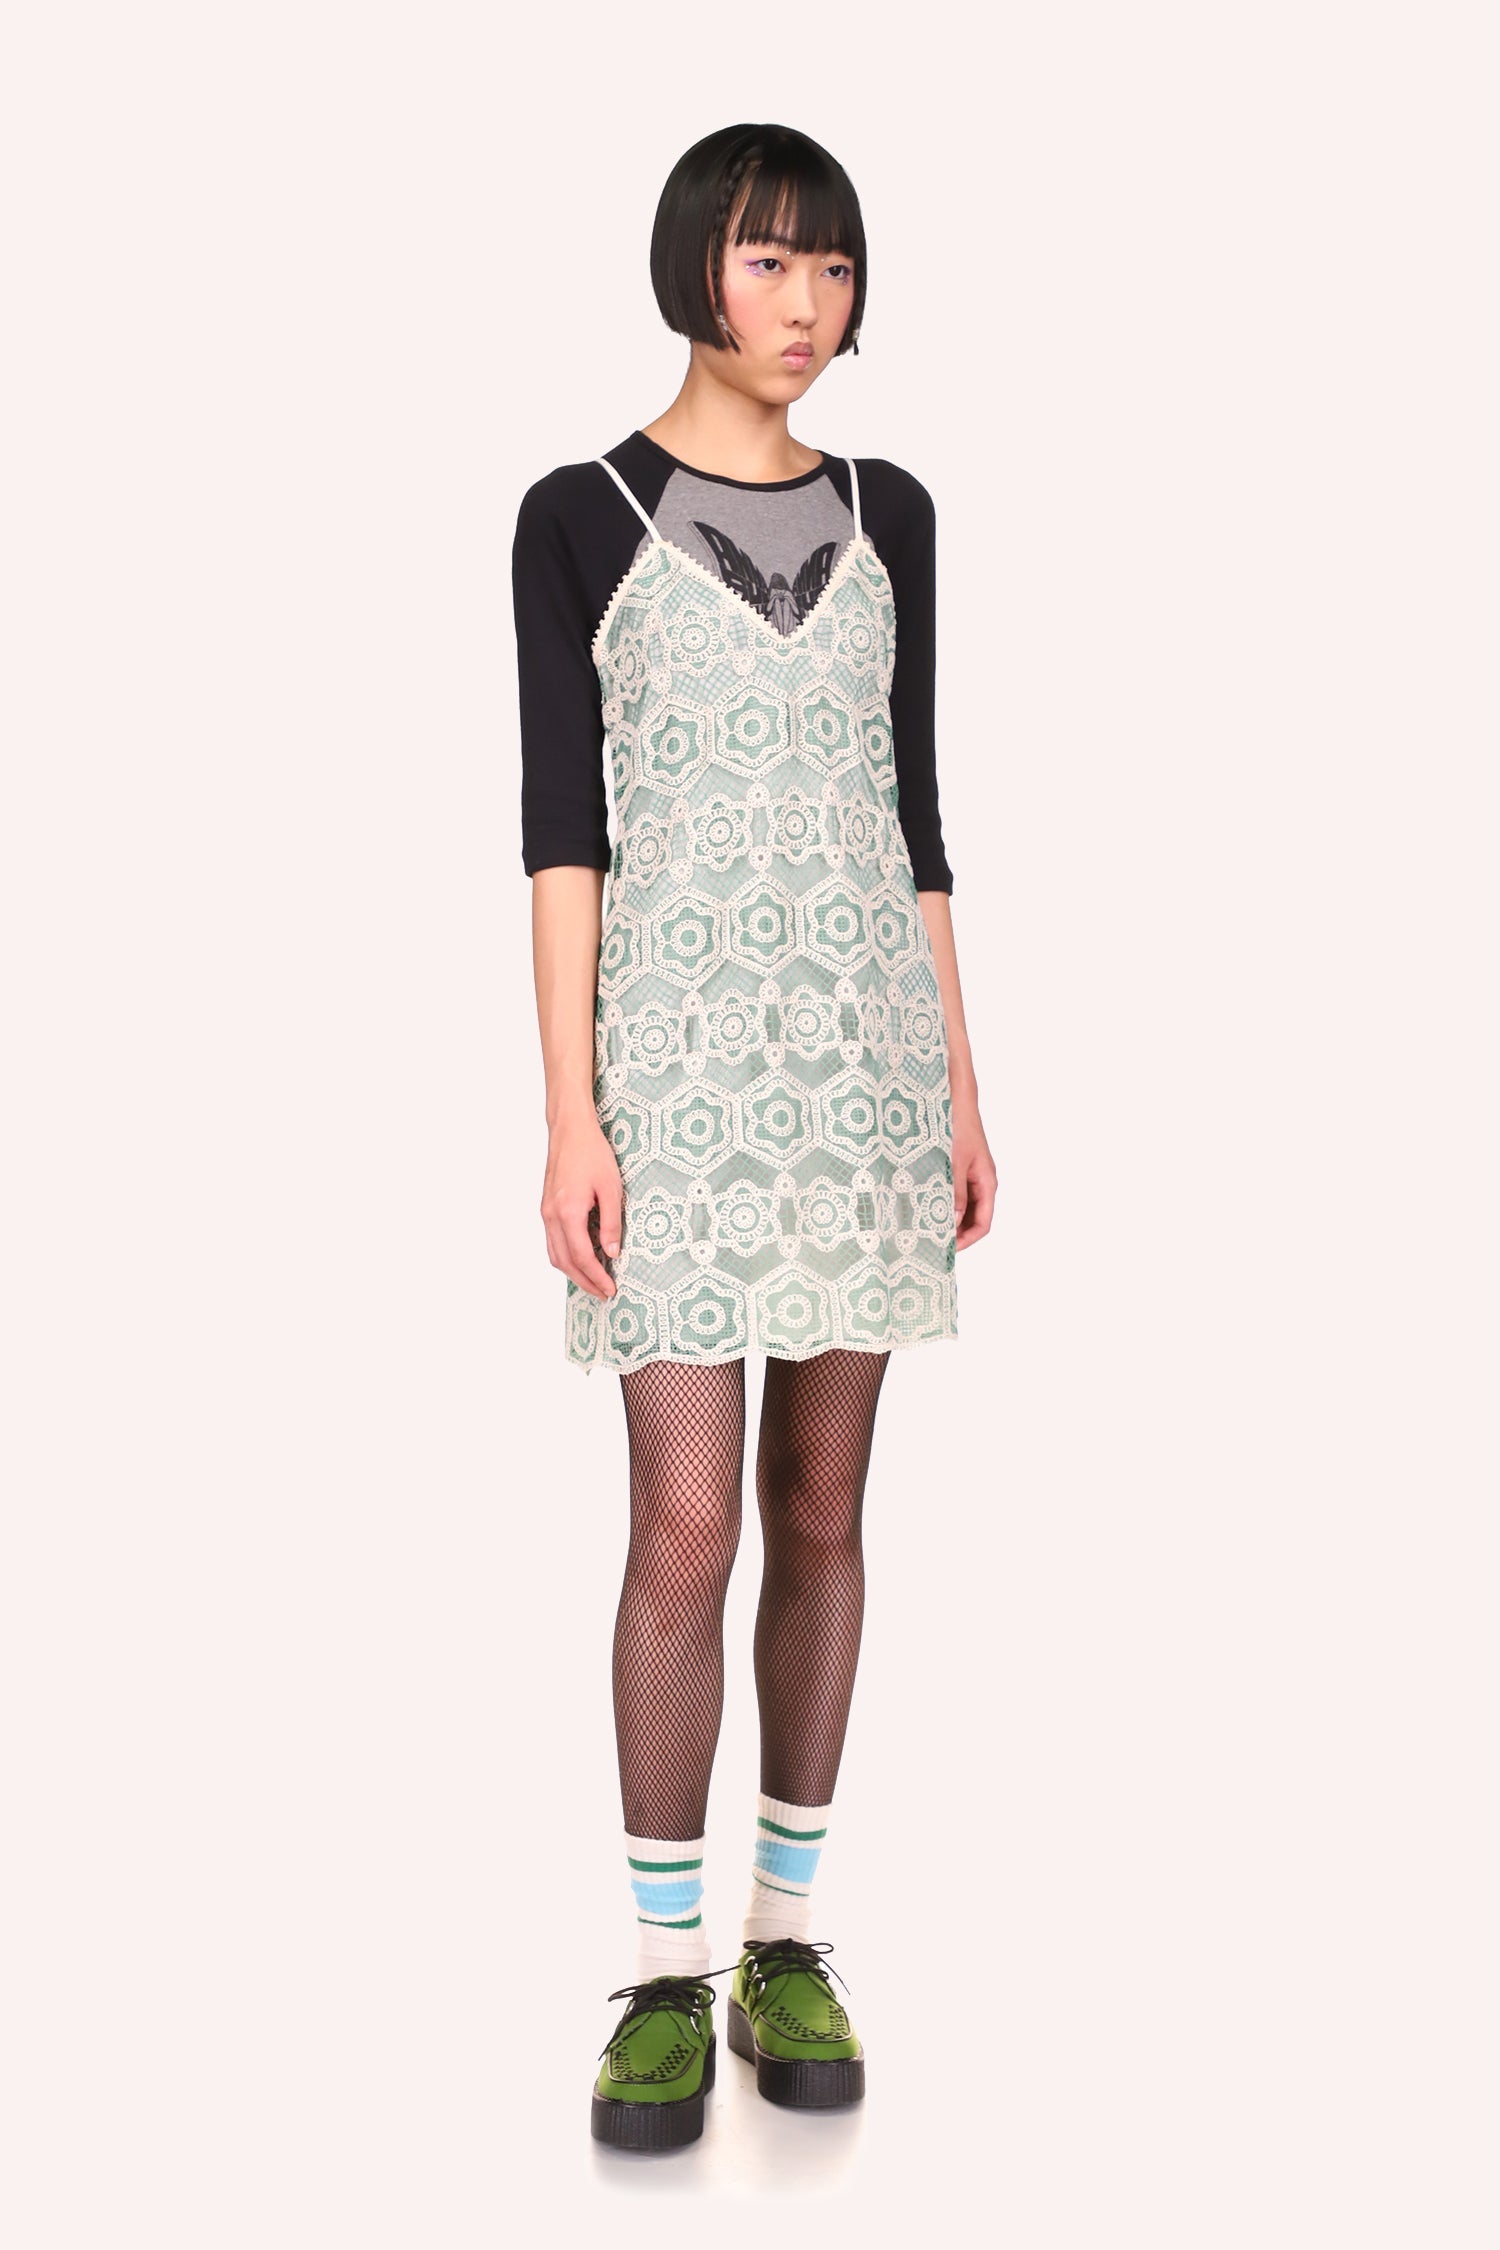 Mod Floral Lace Slip Dress – Anna Sui